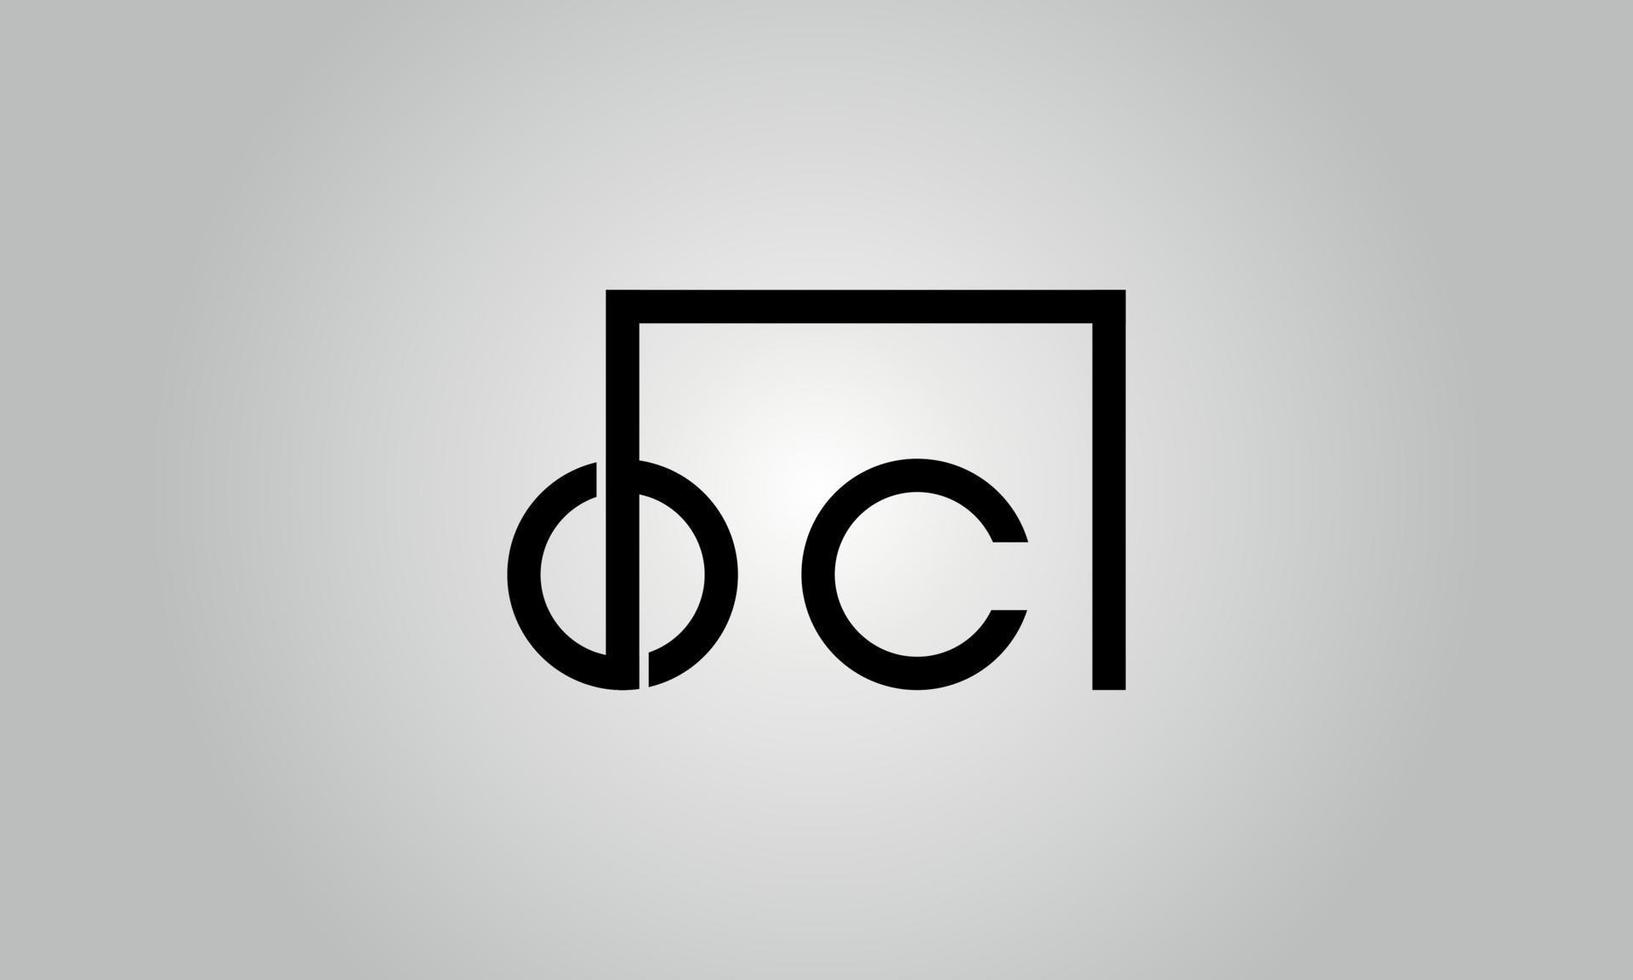 création de logo lettre oc. logo oc avec forme carrée dans le modèle vectoriel gratuit de couleurs noires.